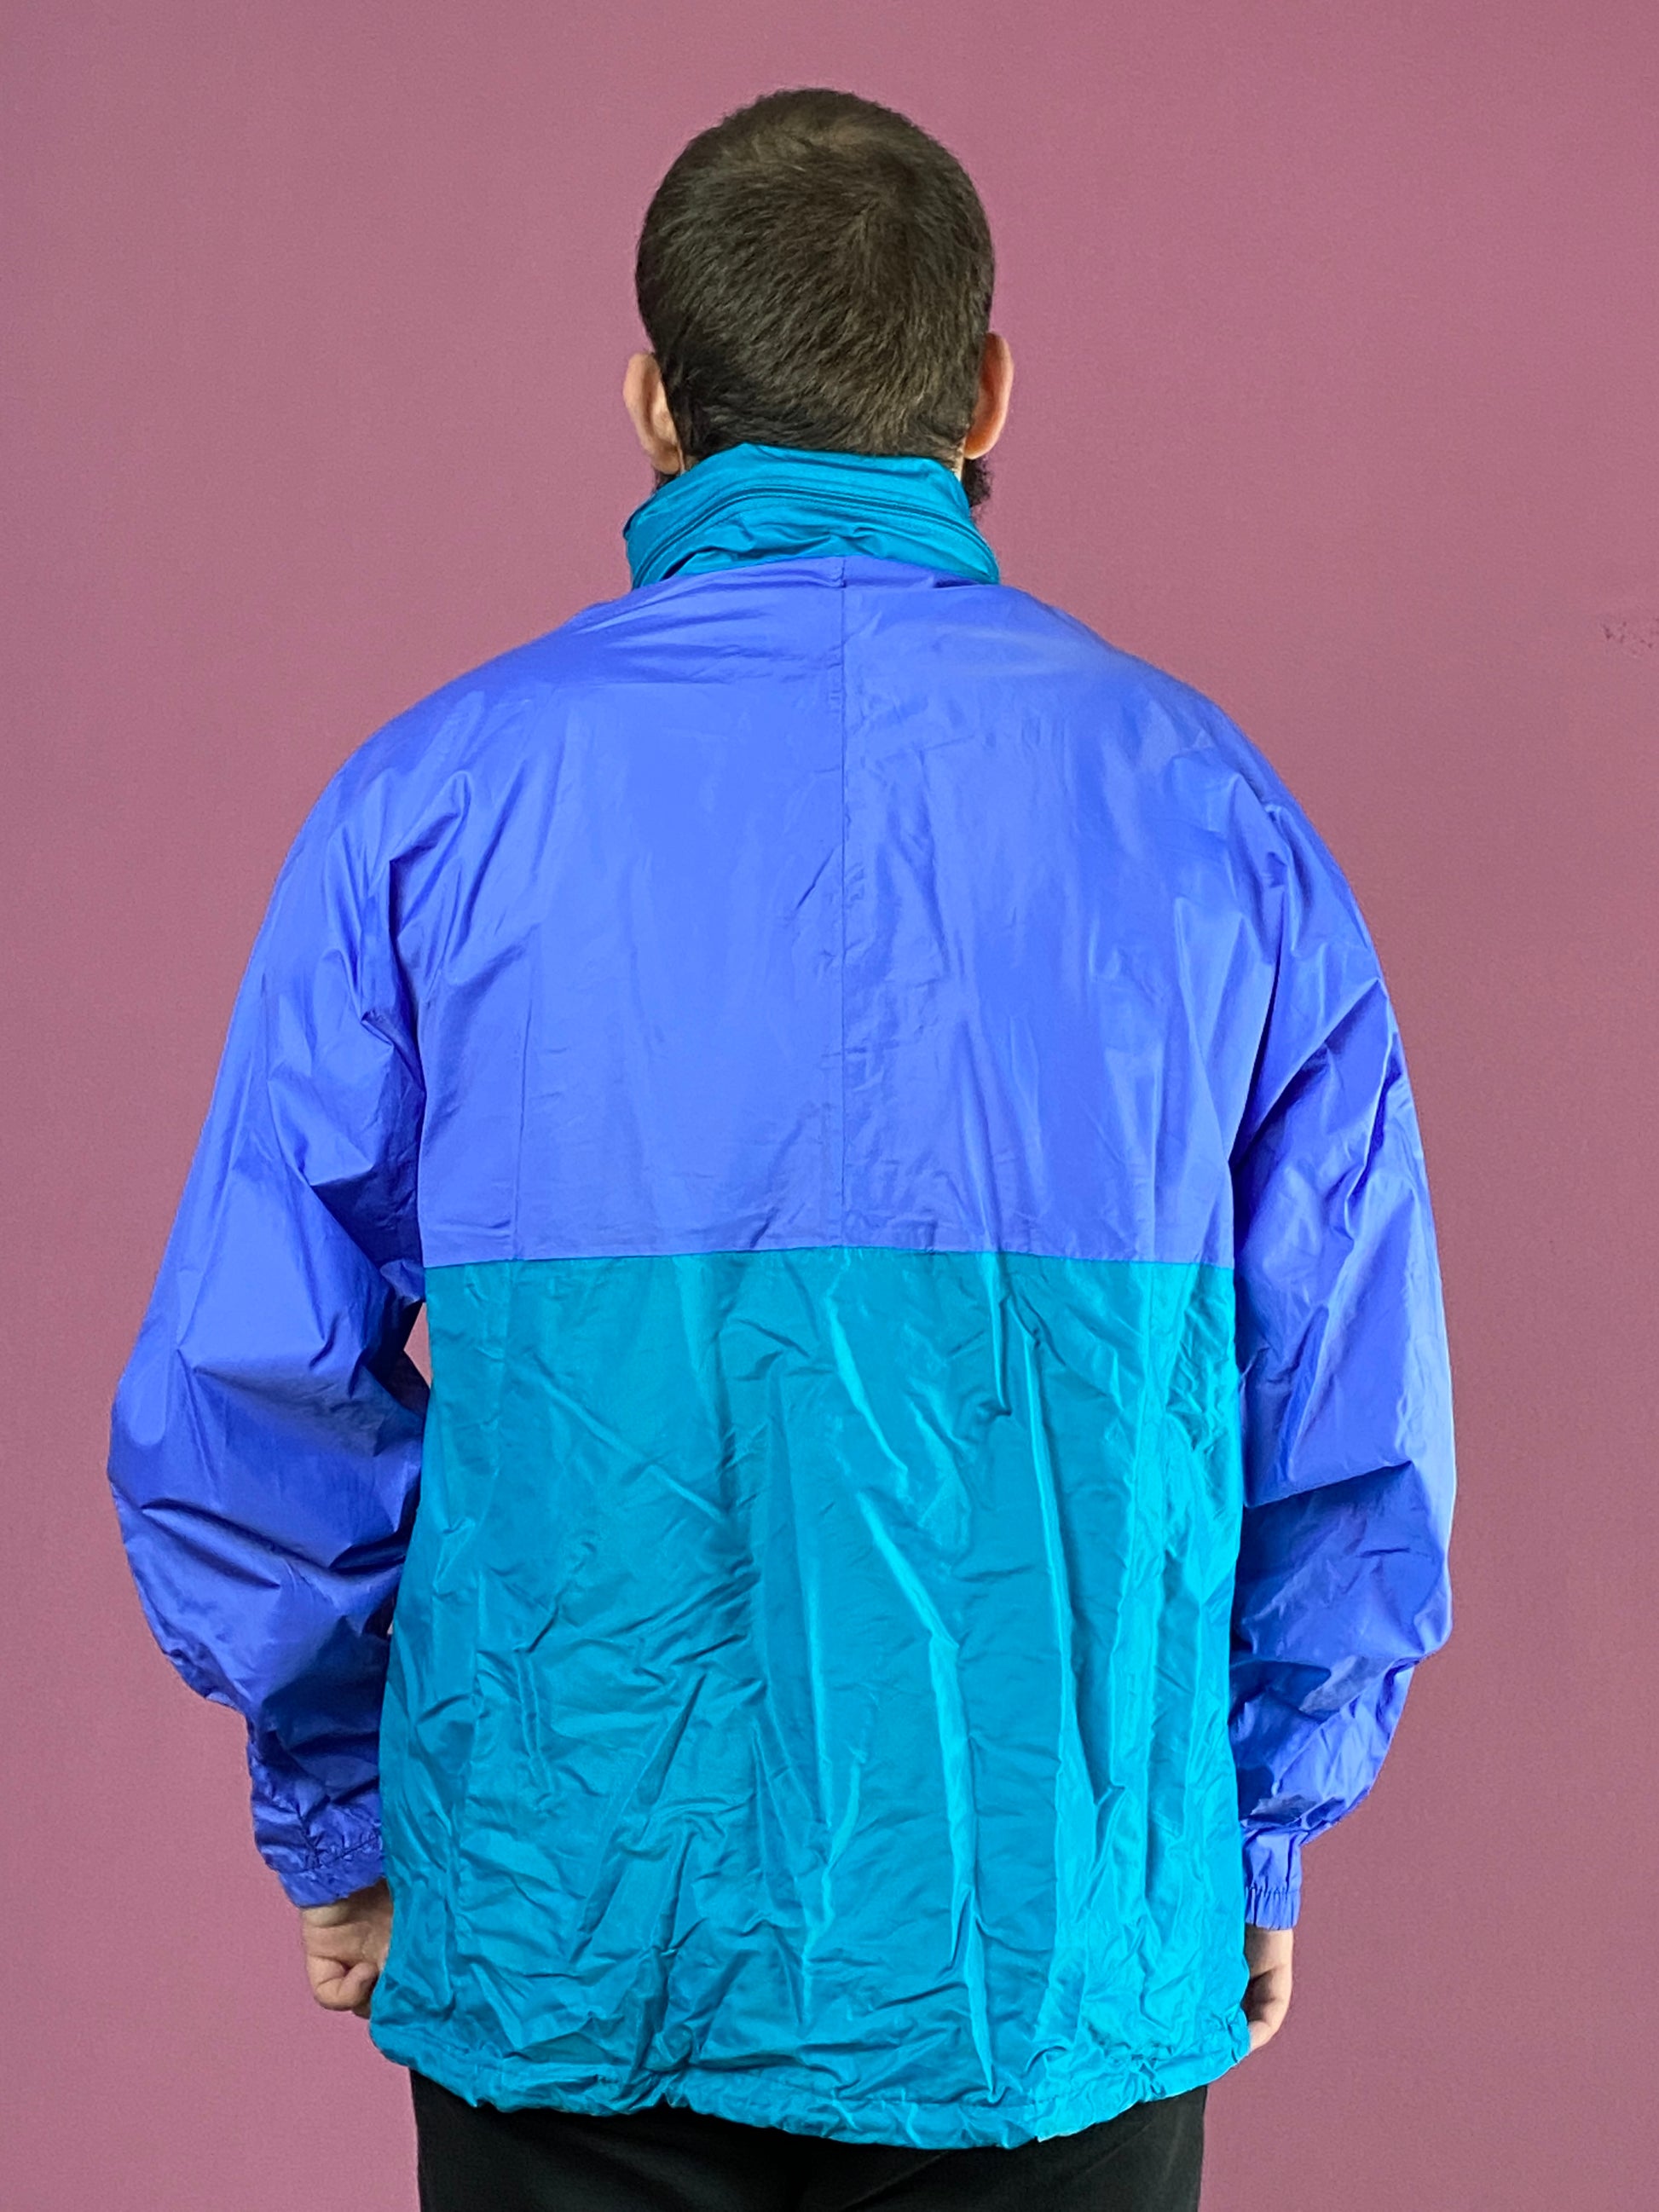 Aqua Guard Vintage Men's Rain Jacket - Large Blue & Purple Nylon